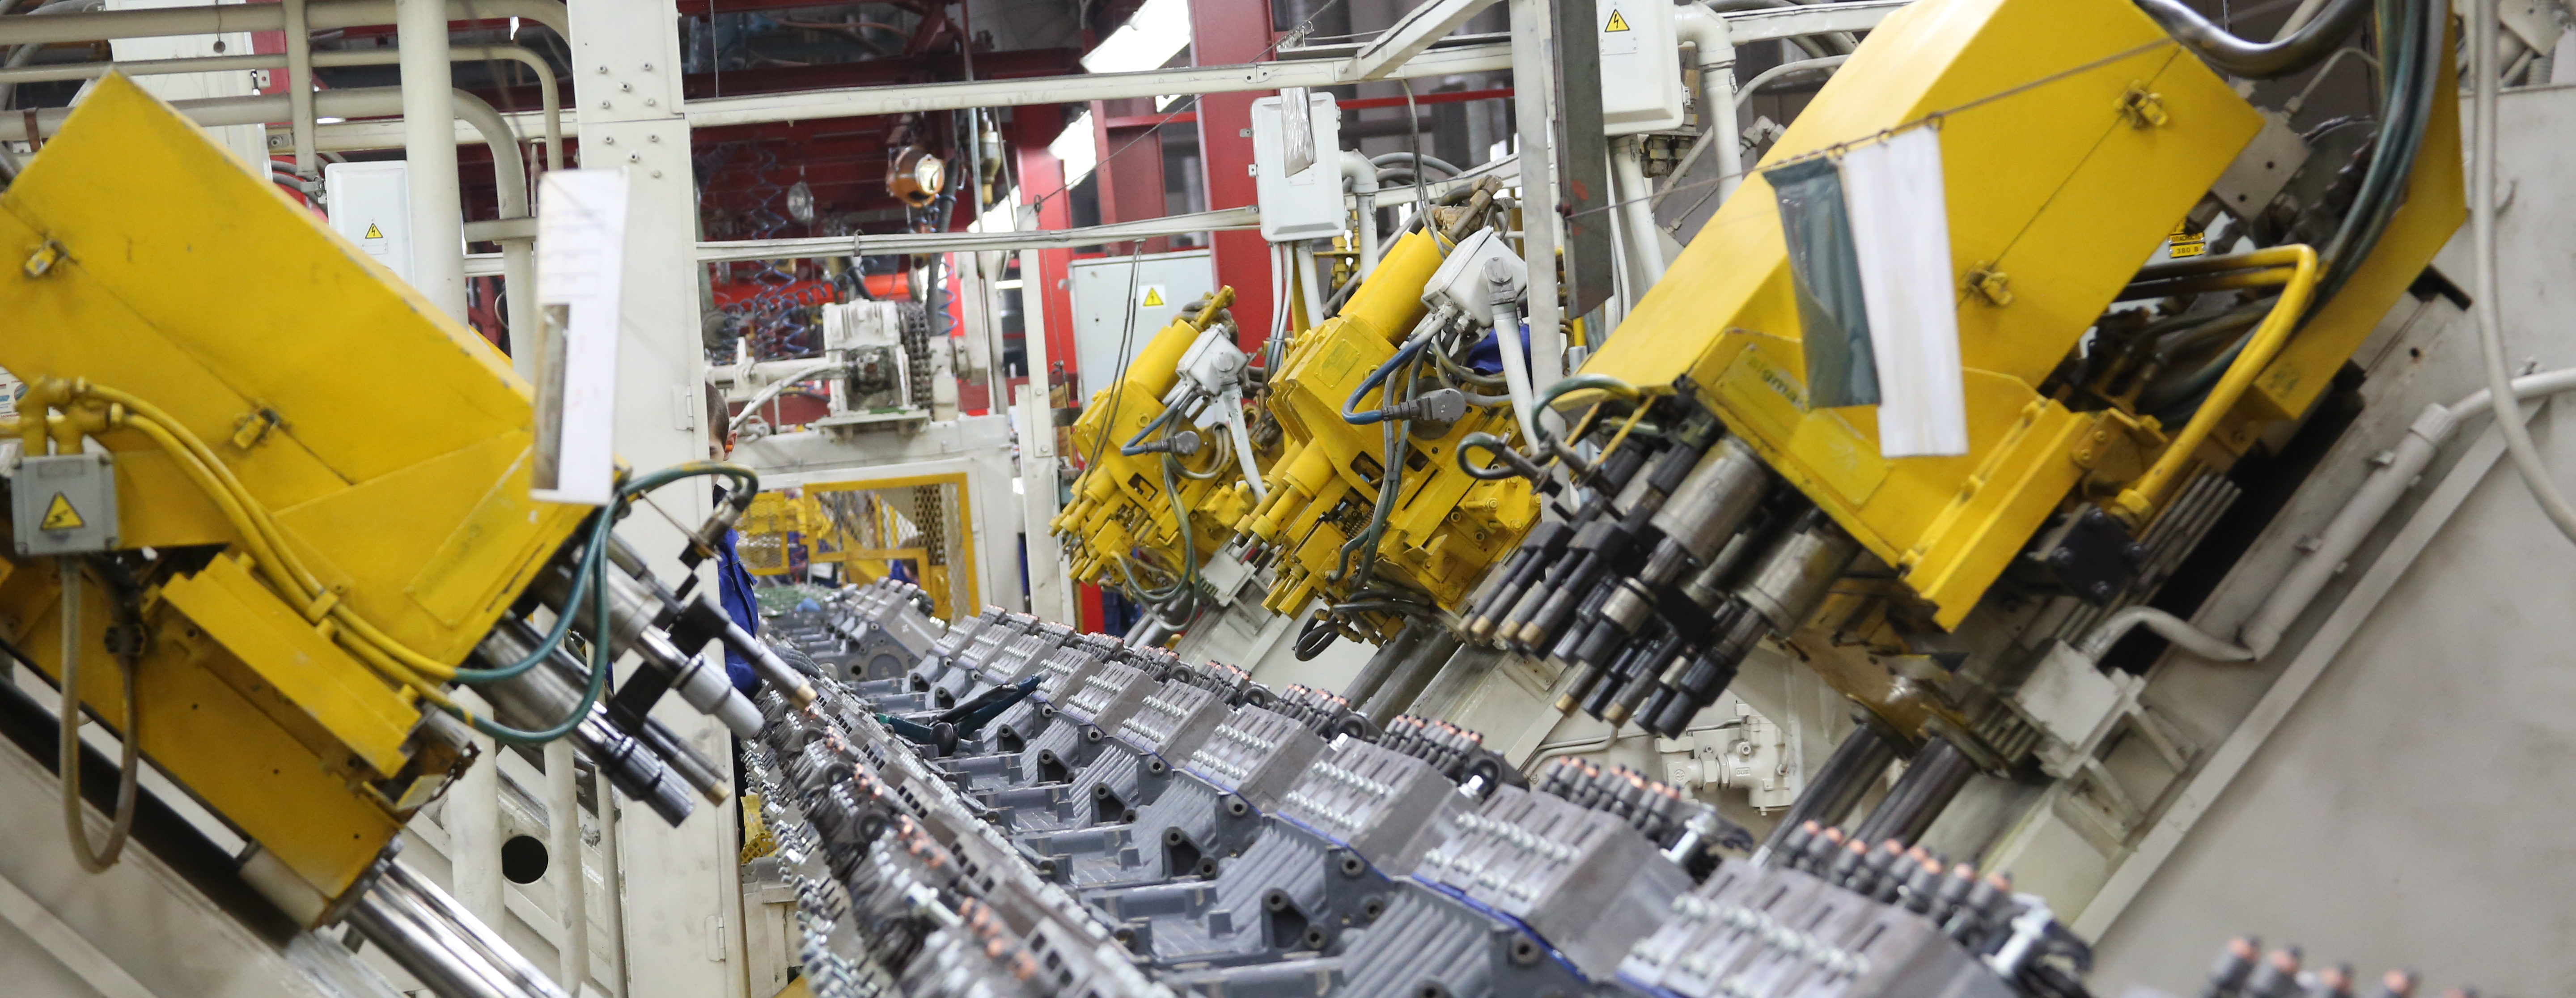 Новую систему гайковертов установят на заводе двигателей «Камаза»